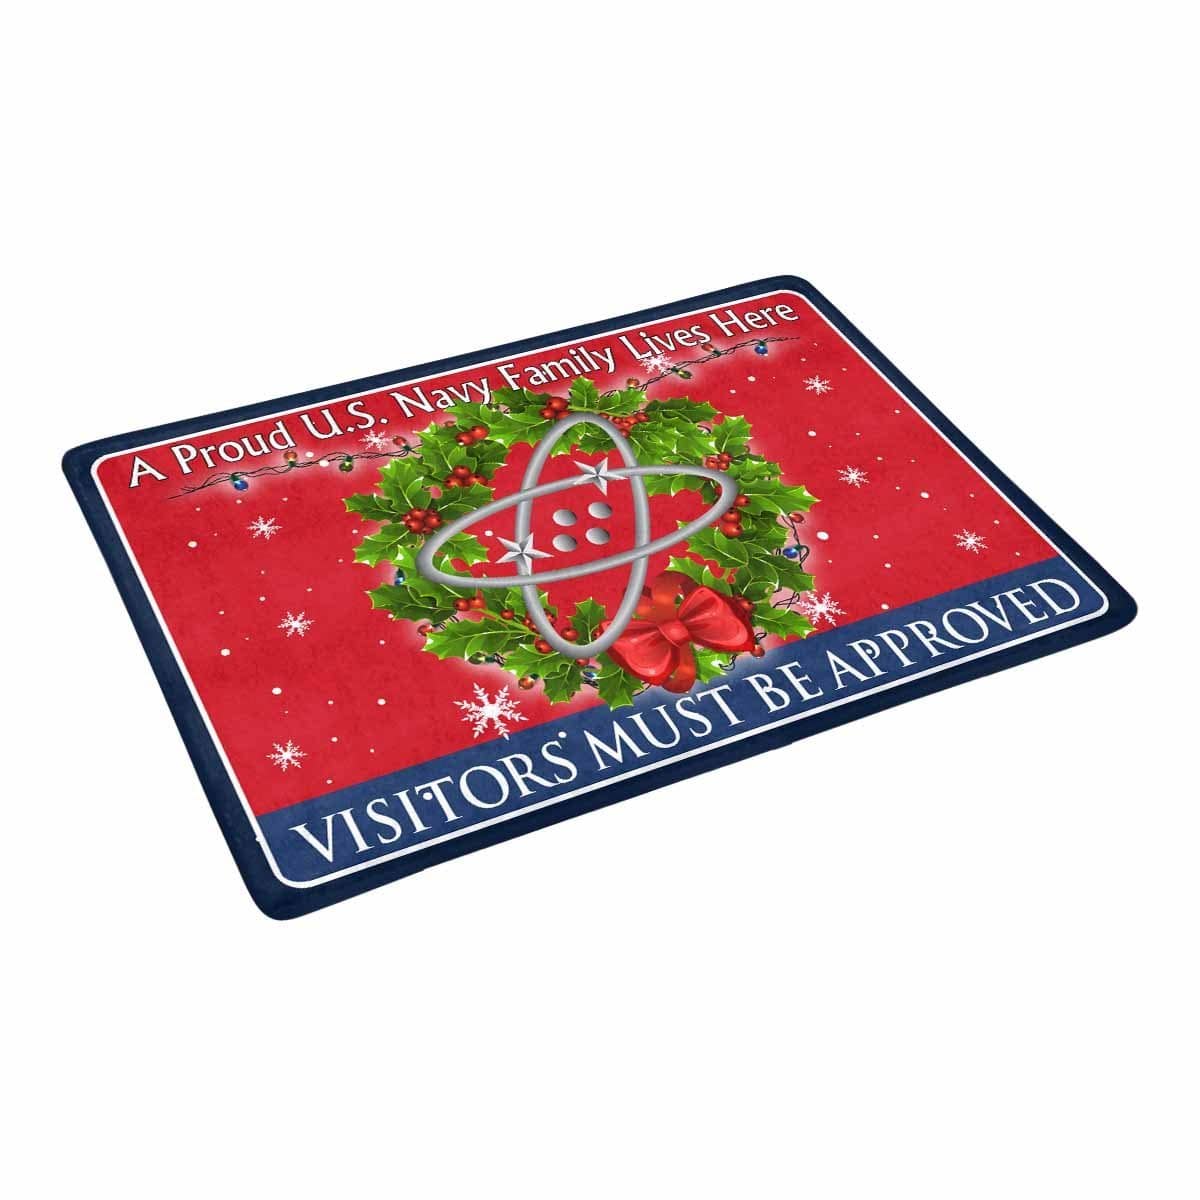 U.S Navy Electronics technician Navy ET - Visitors must be approved - Christmas Doormat-Doormat-Navy-Rate-Veterans Nation